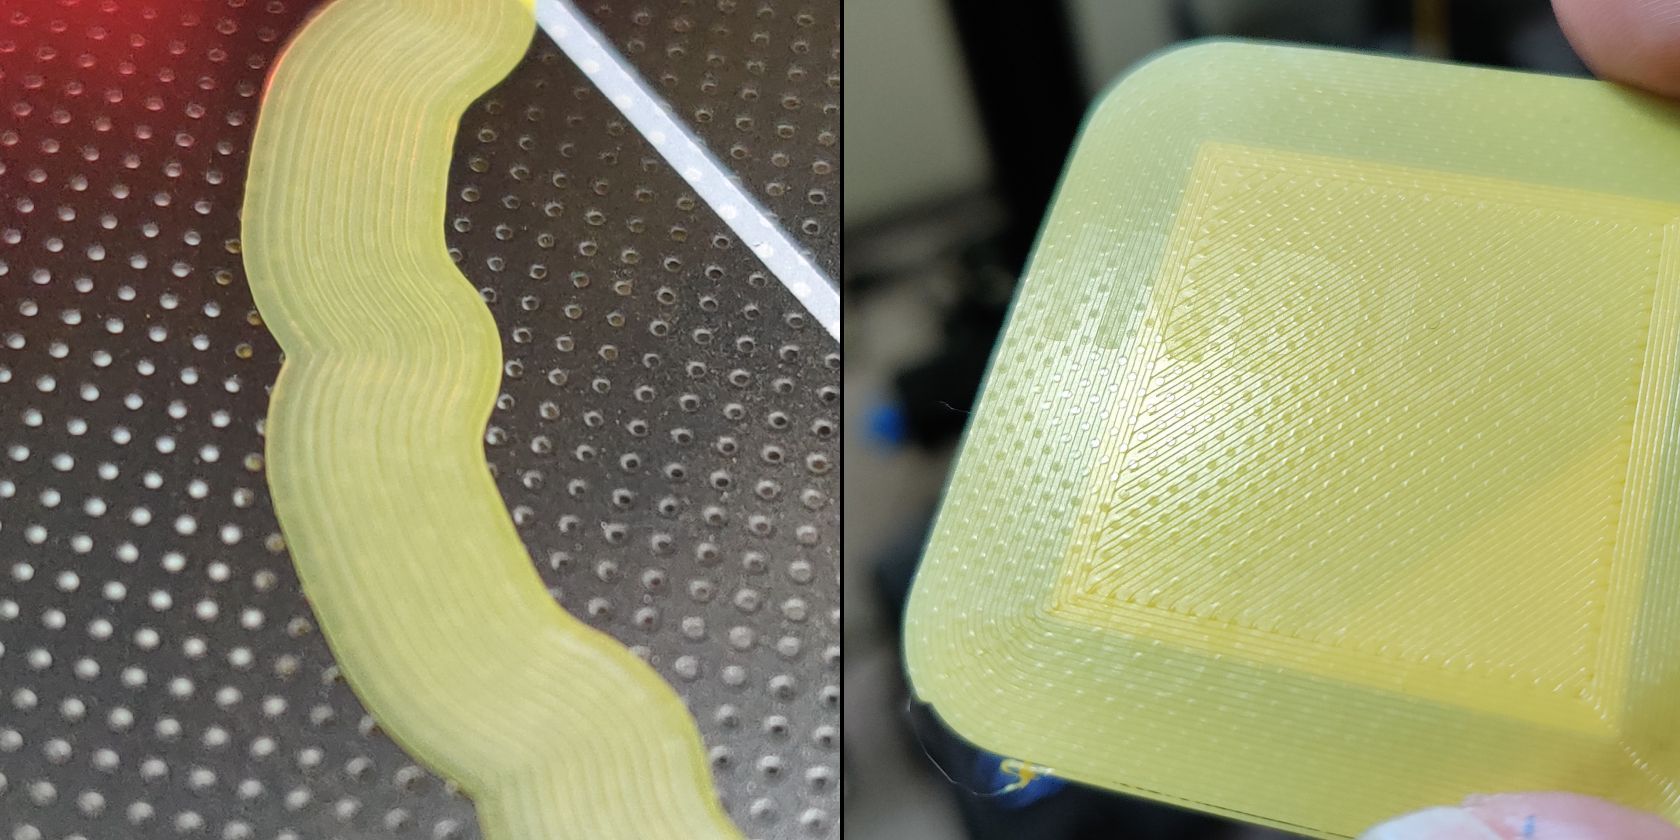 How carborundum surface texture affects prints